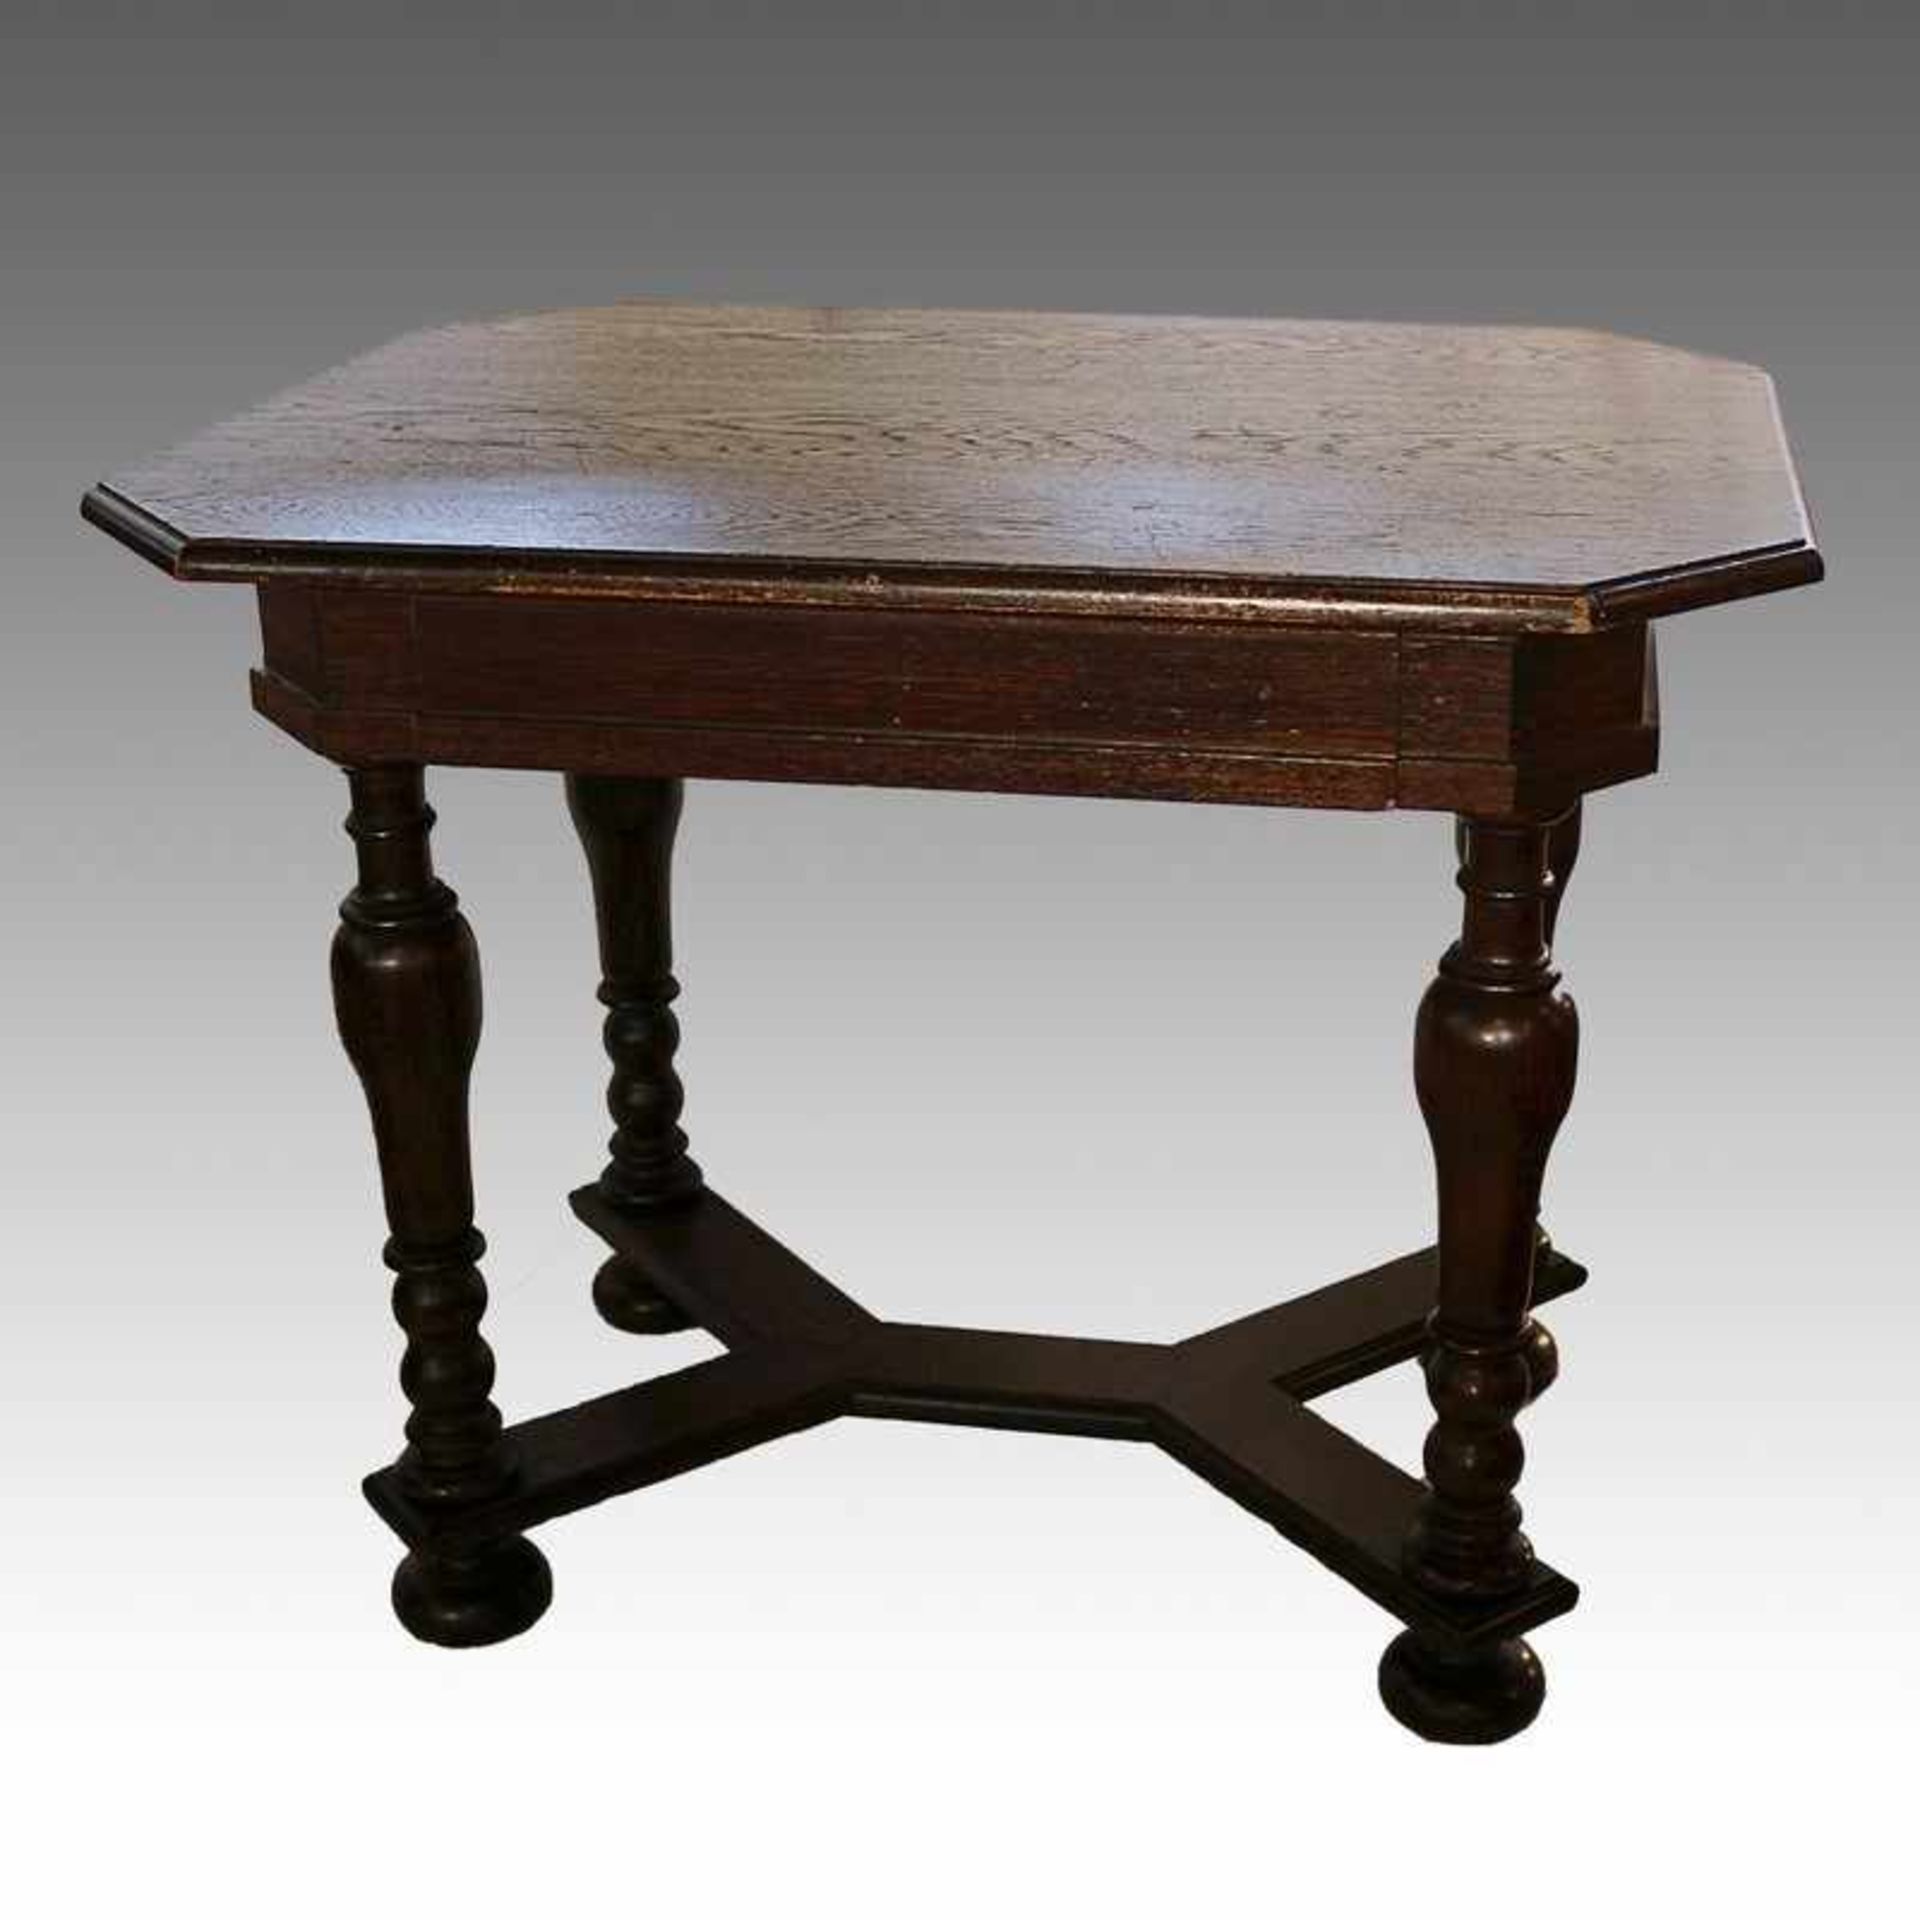 Gründerzeit - Tisch um 1890, Eiche dunkel, gedrückte Kugelfüße, mi. travers verstrebt, hohe Zarge, 1